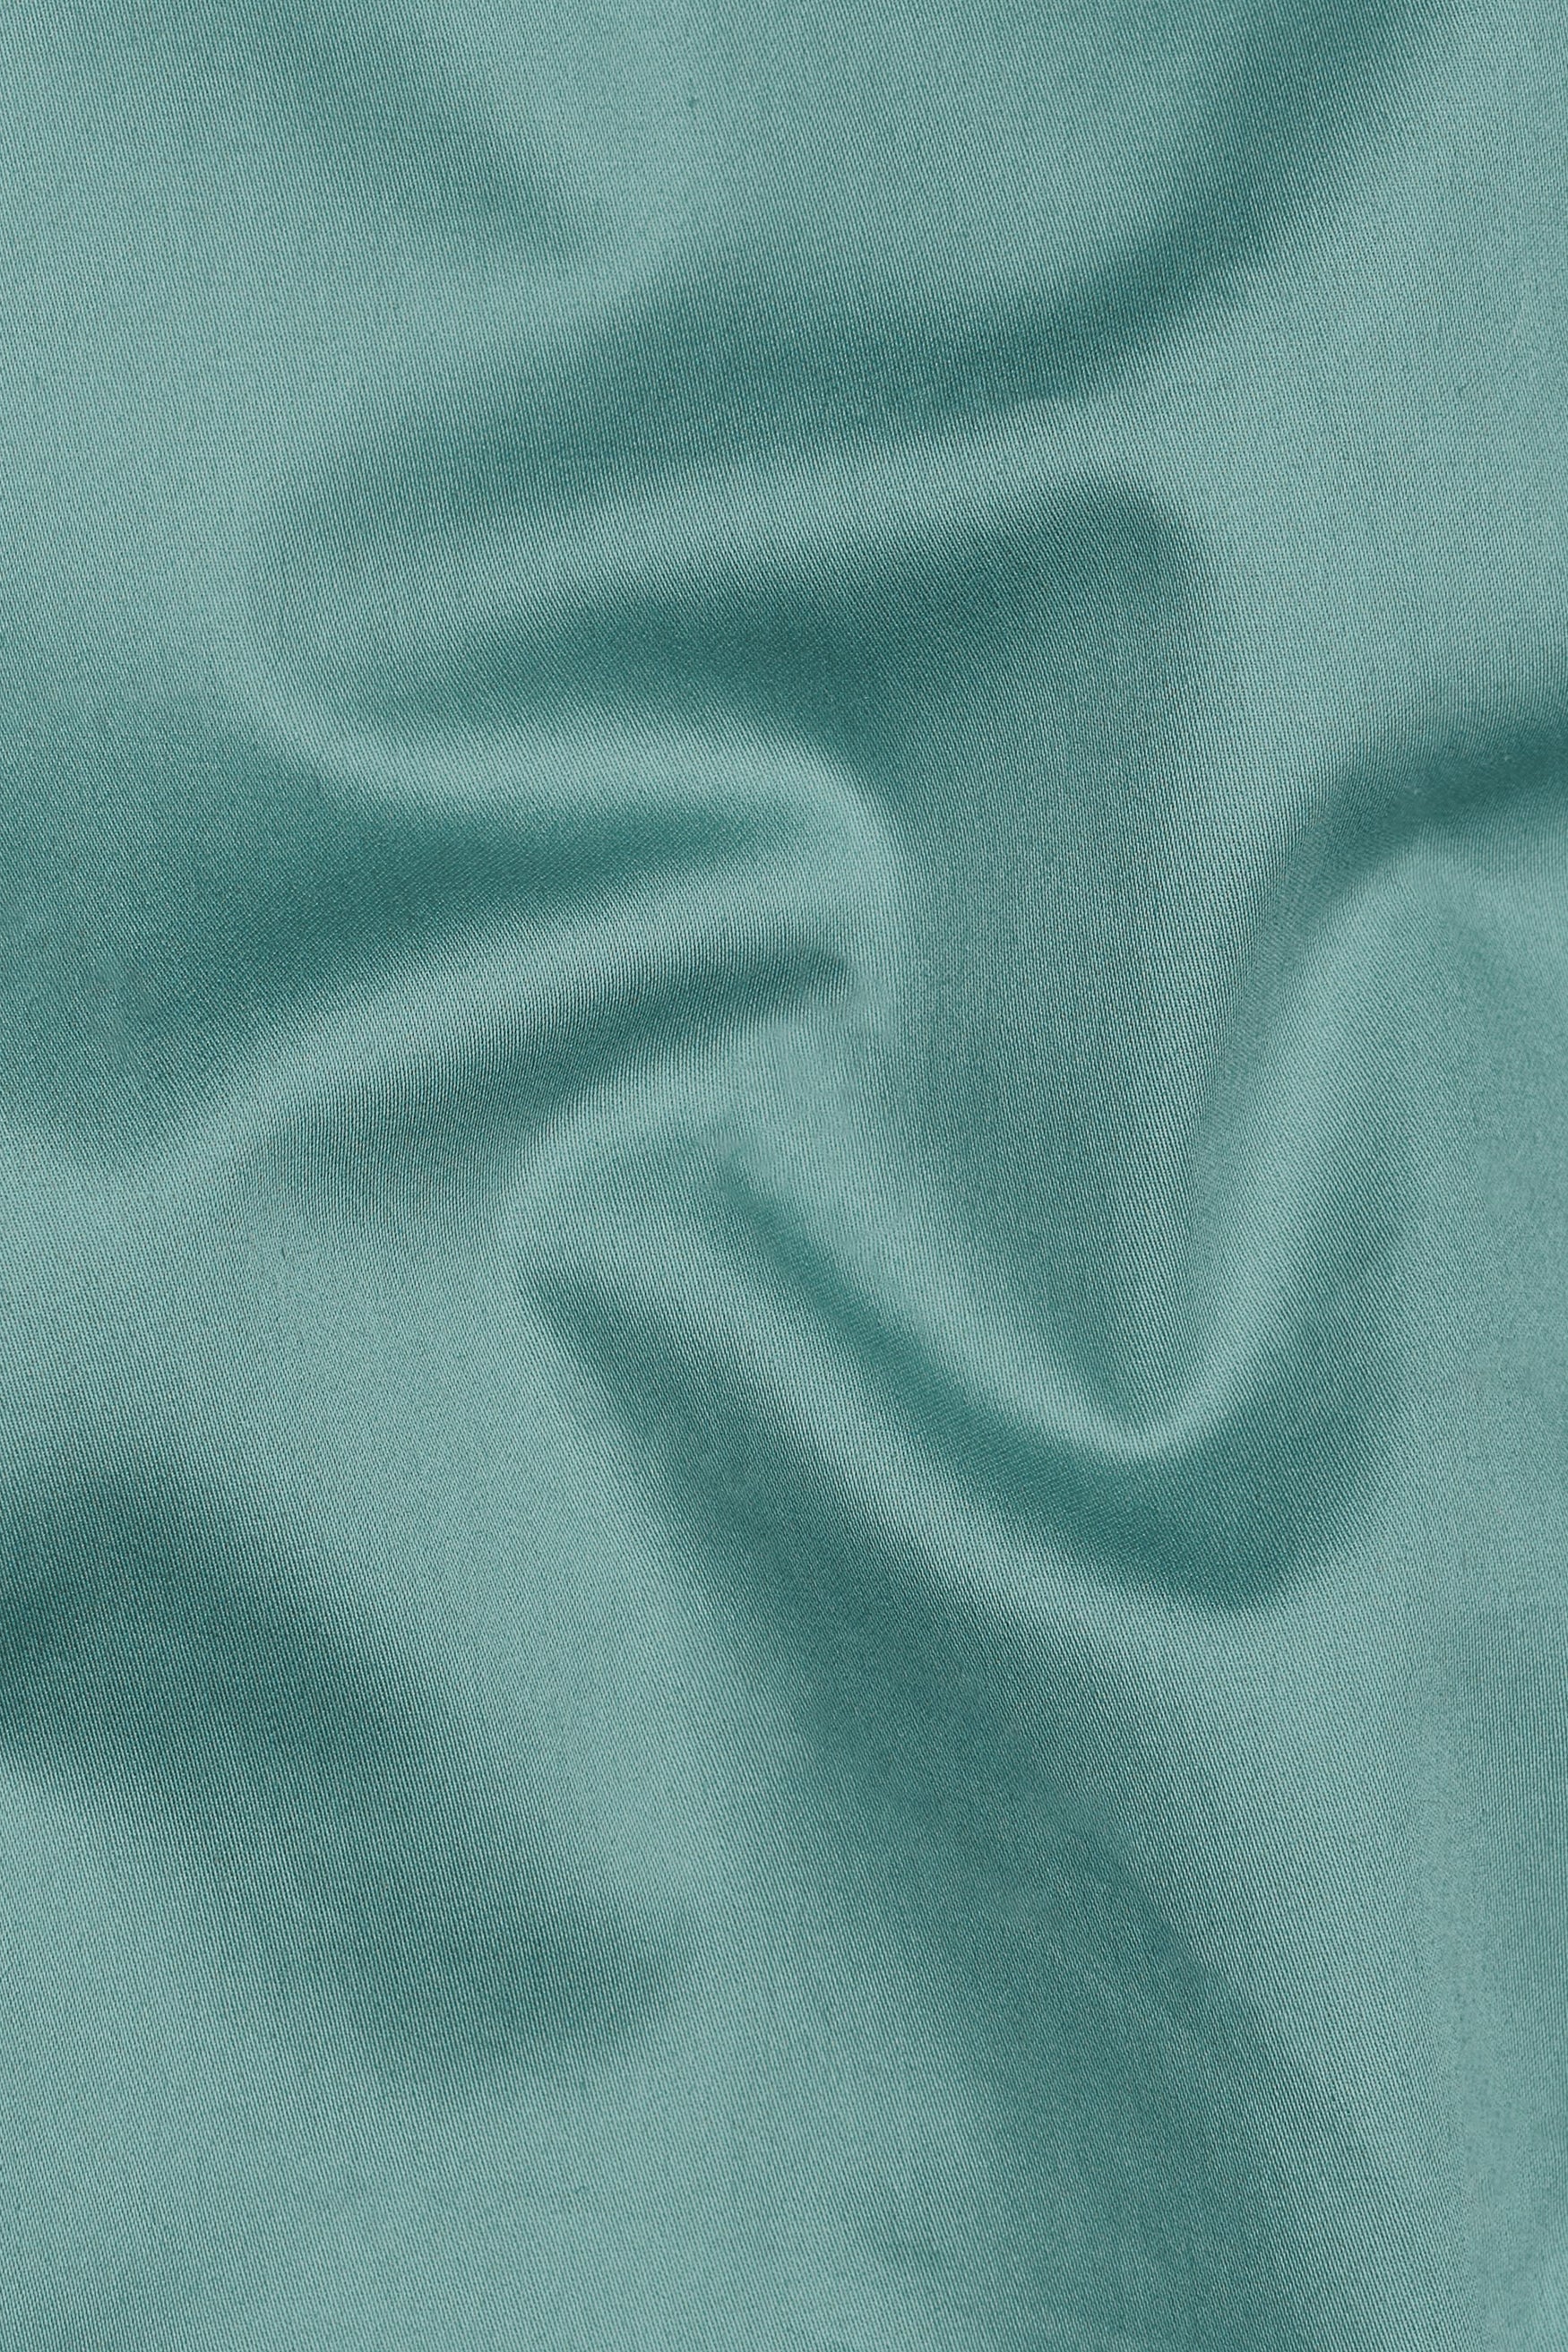 Neptune Blue Subtle Sheen Super Soft Premium Cotton Pathani